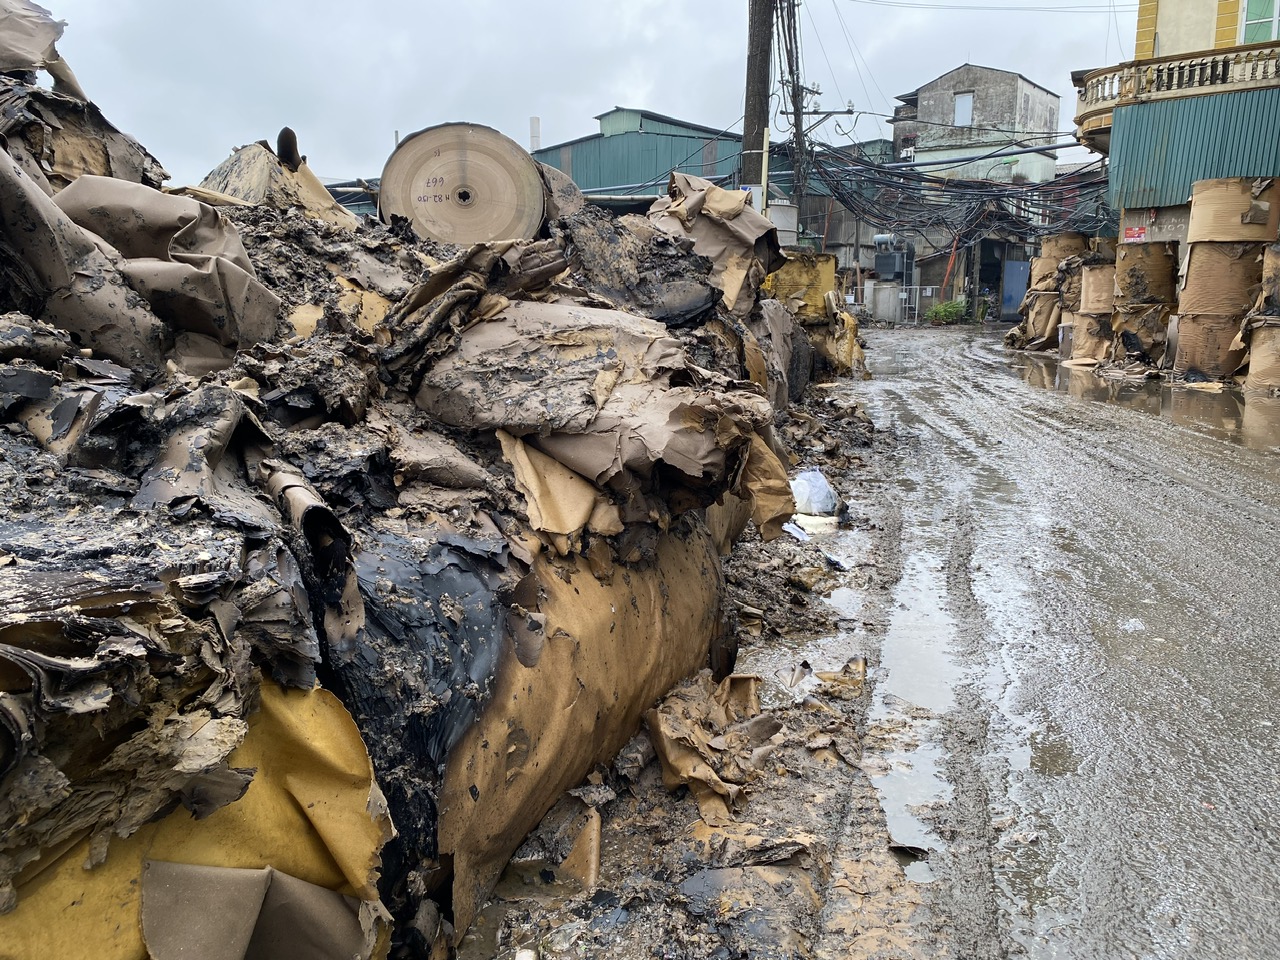 Bắc Ninh: Những cuộn giấy cháy dở chất đống rìa đường sau vụ cháy xưởng sản xuất giấy ở Phong Khê - Ảnh 3.